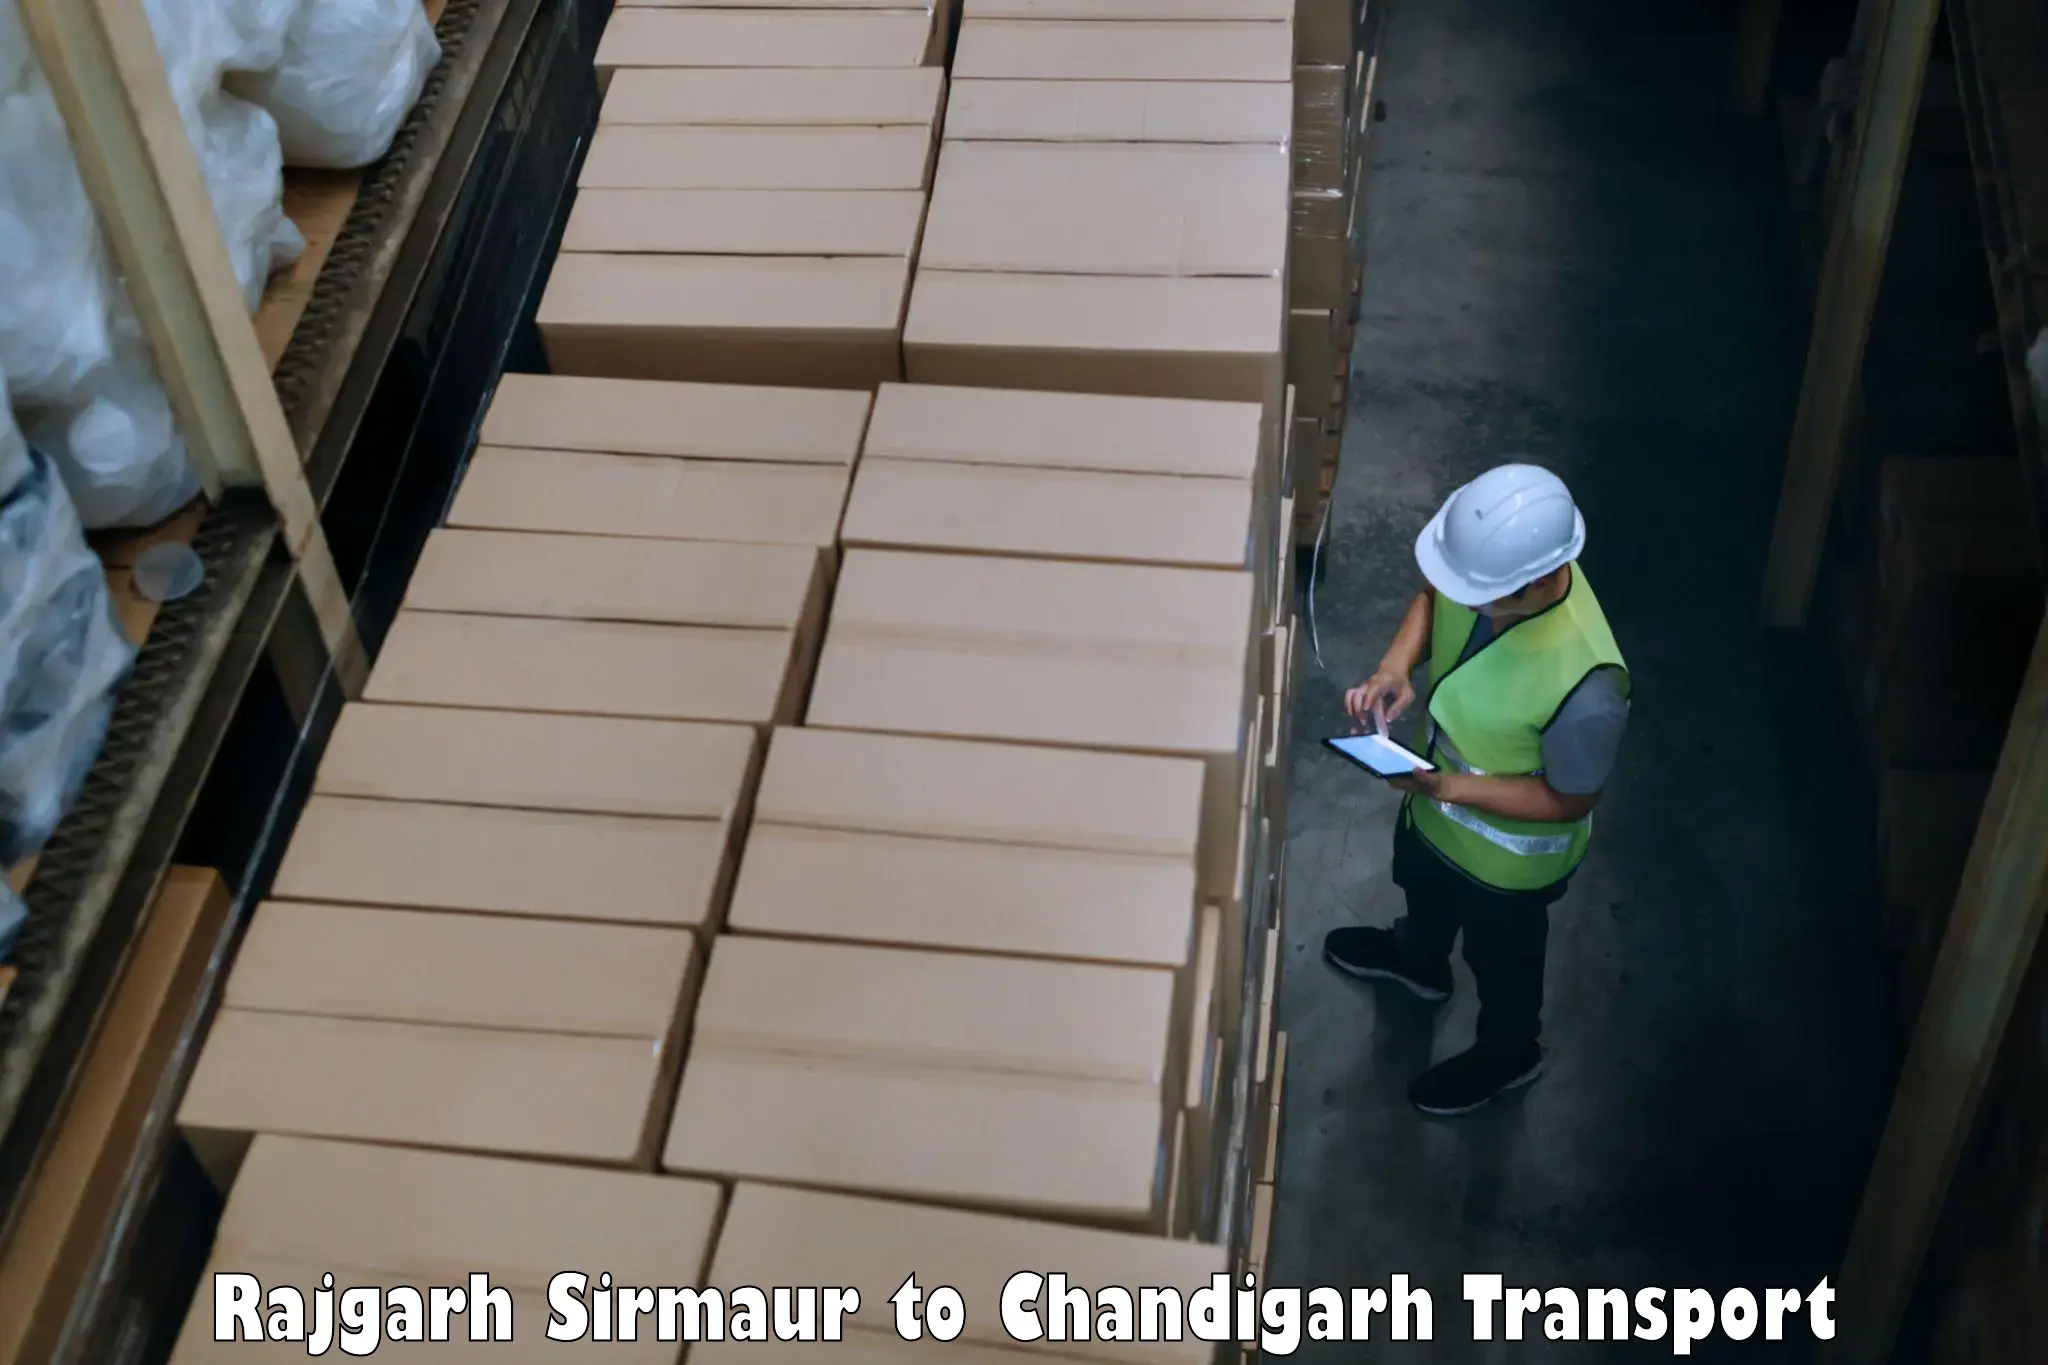 Nearest transport service Rajgarh Sirmaur to Chandigarh